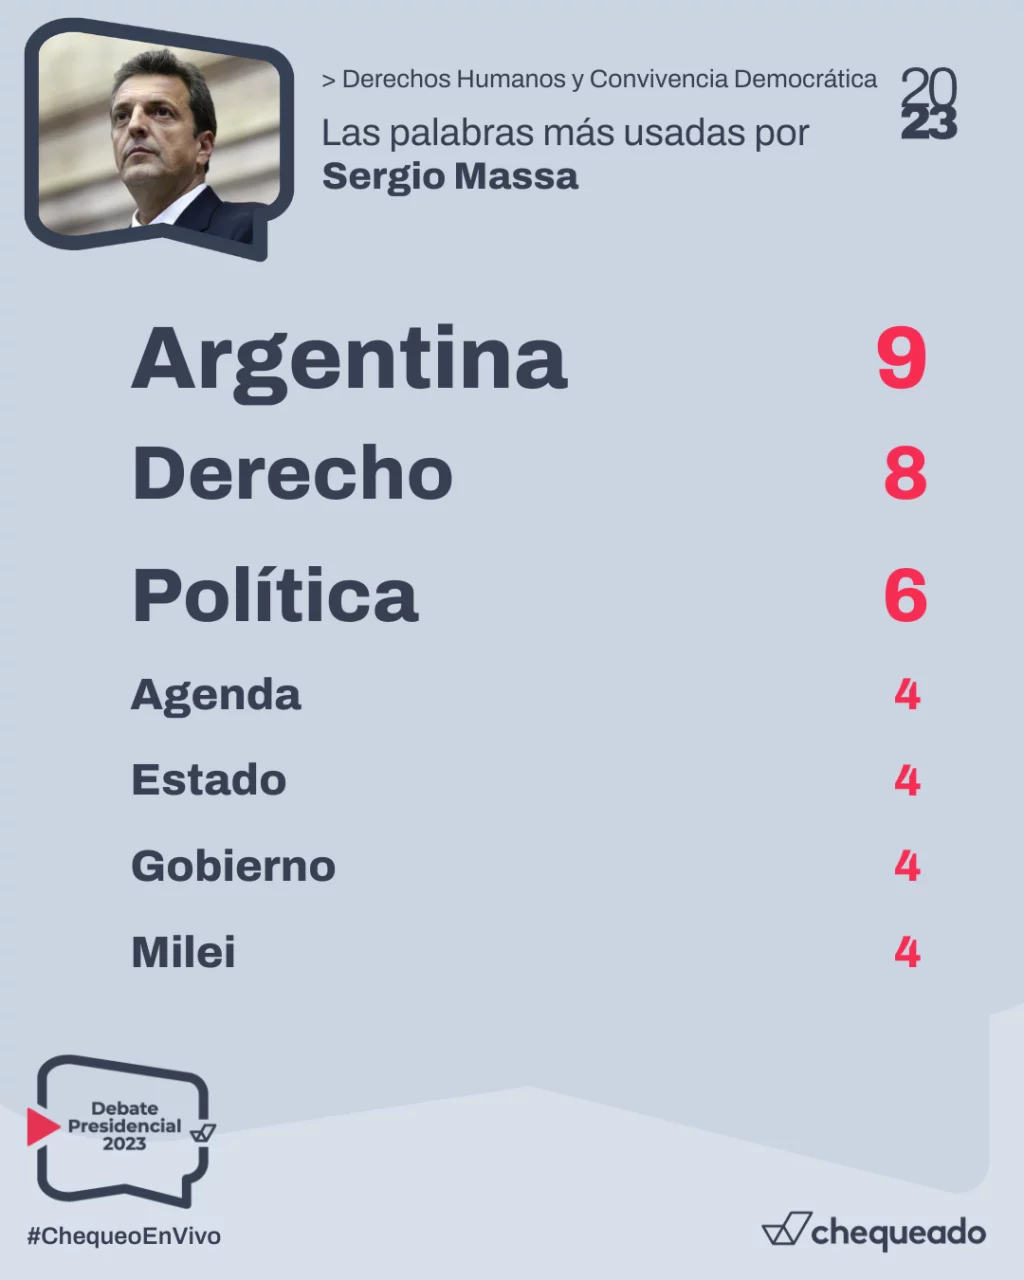 Debate presidencial 2023: qué dijo Sergio Massa sobre derechos humanos y democracia